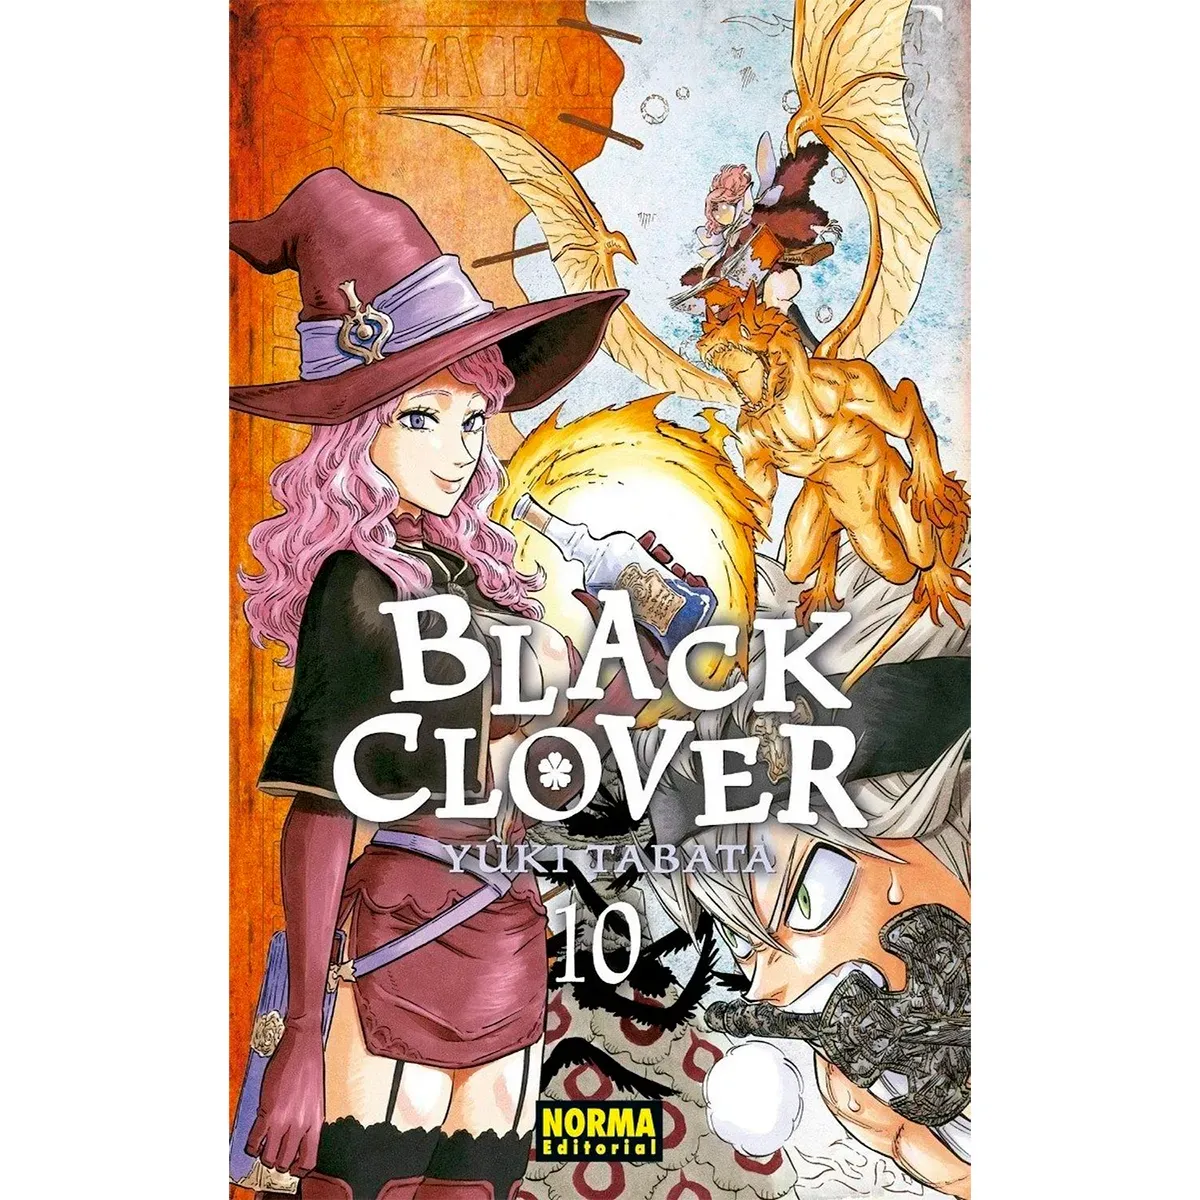 Black Clover No. 10